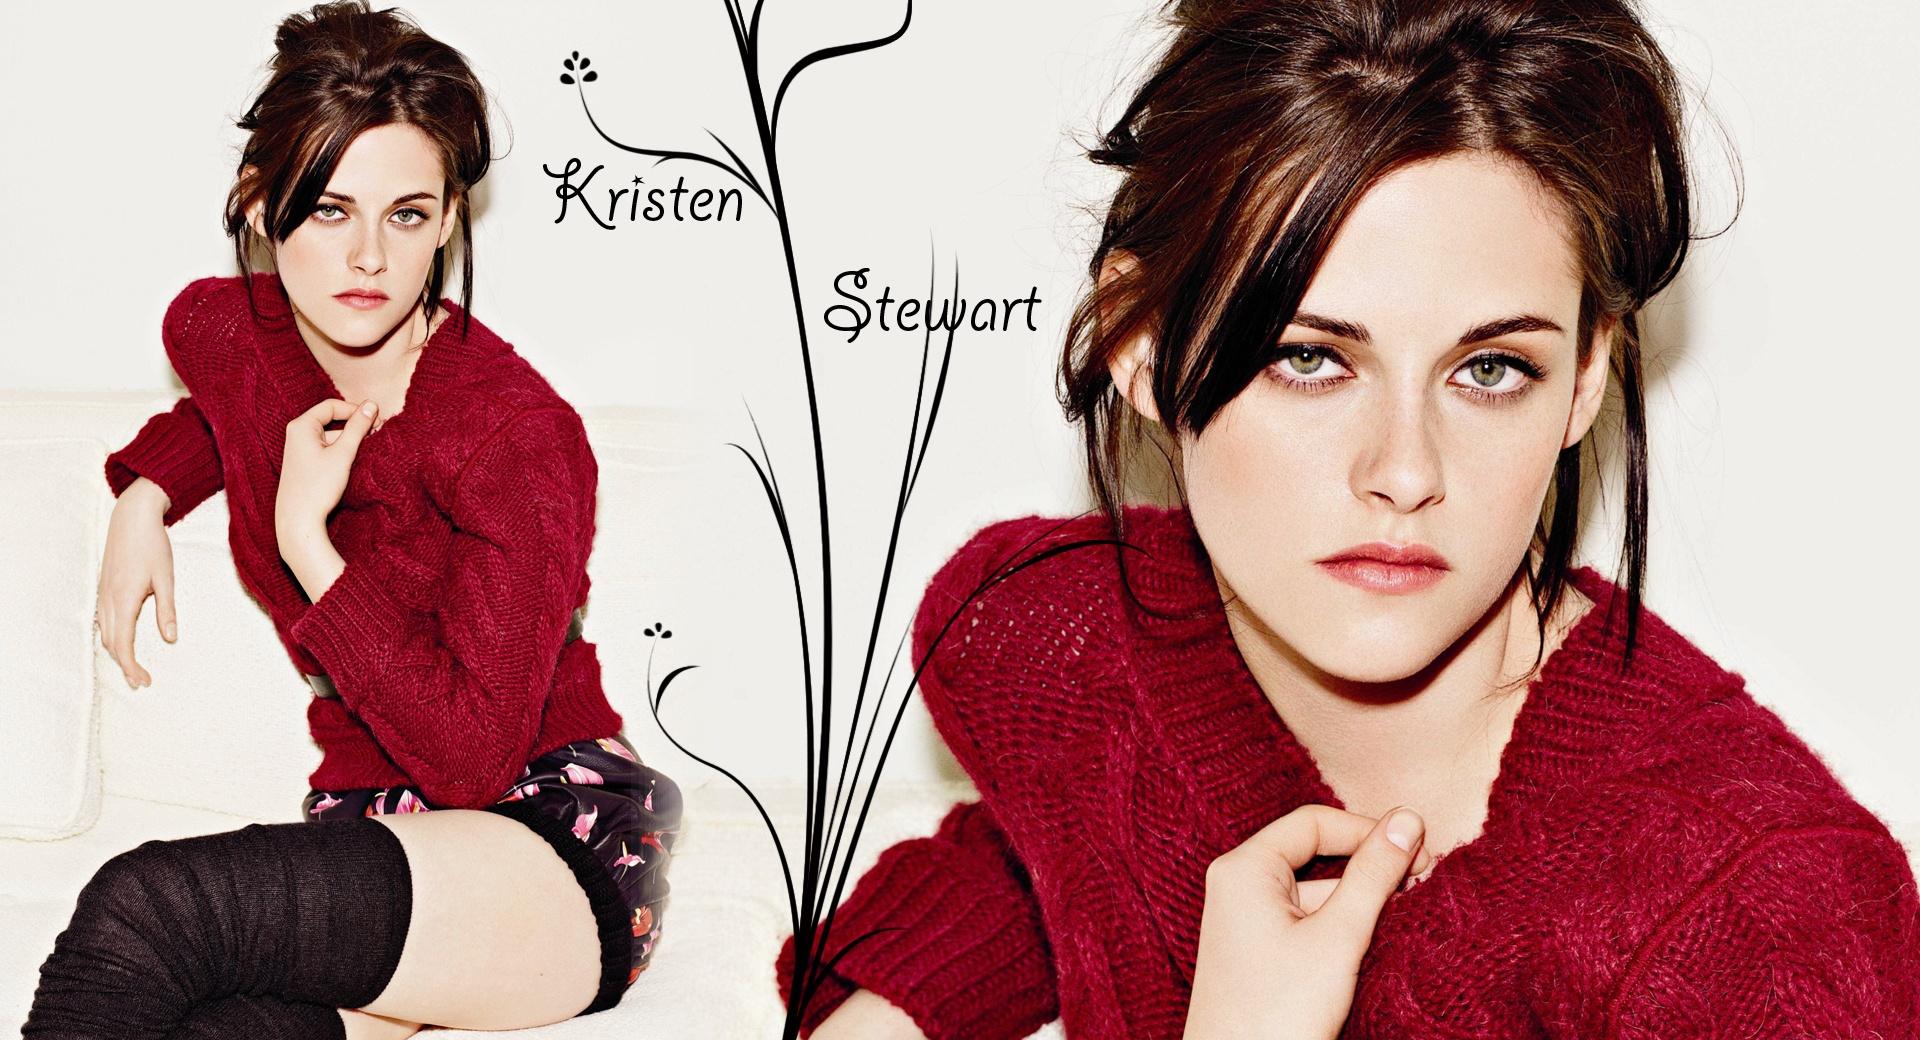 Kristen Stewart Hot wallpapers HD quality